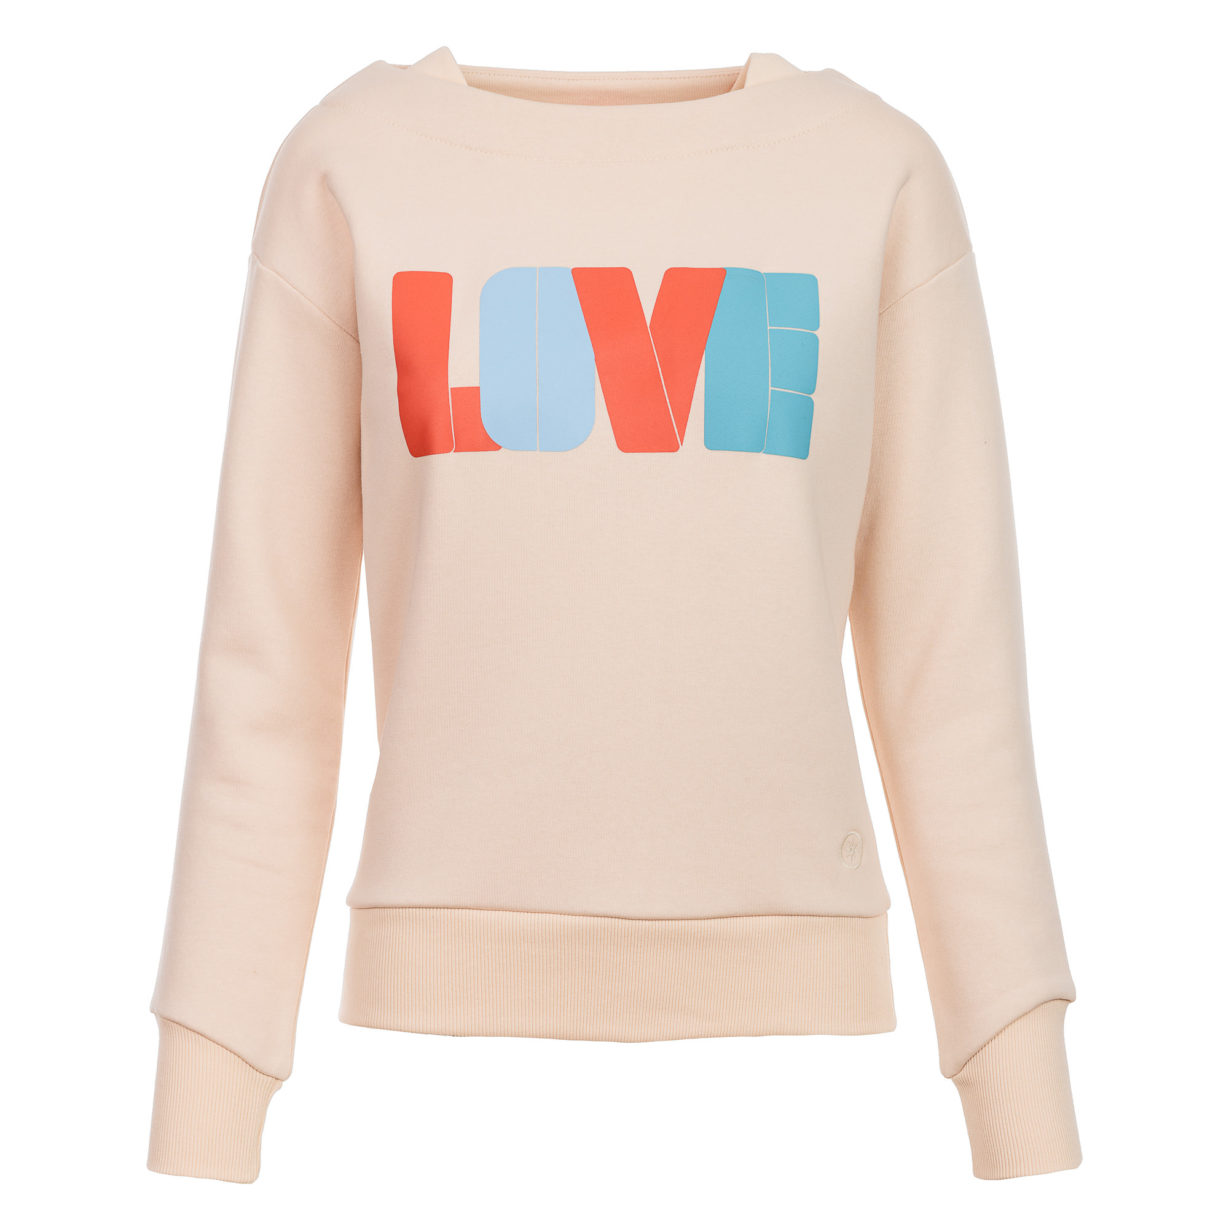 Kulóóntje - Sweatshirt mit Boatneckkragen und LOVE Print